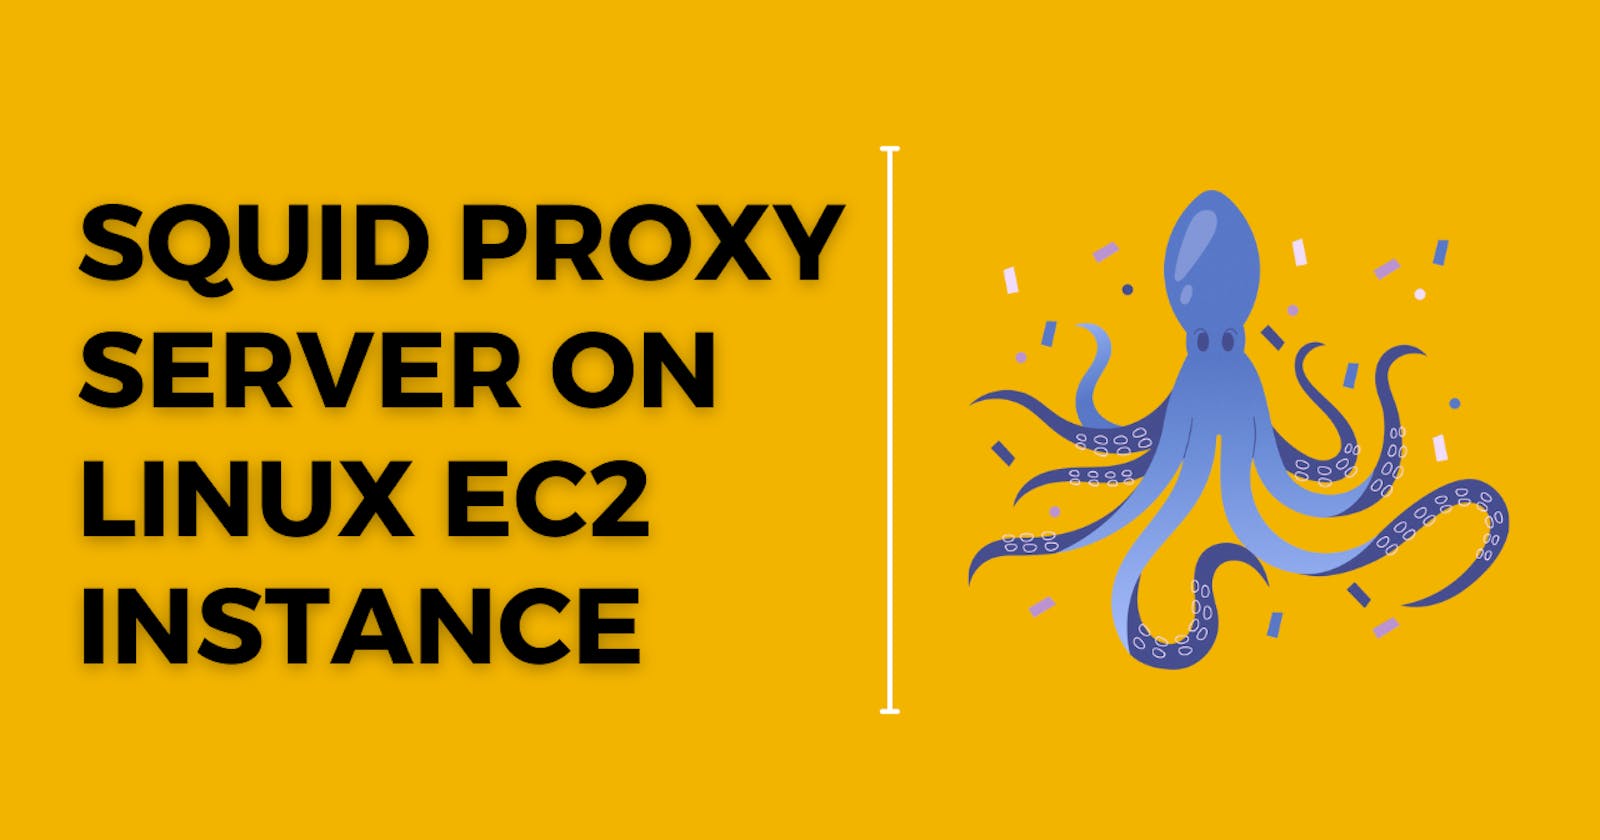 Squid Proxy on Linux EC2 server